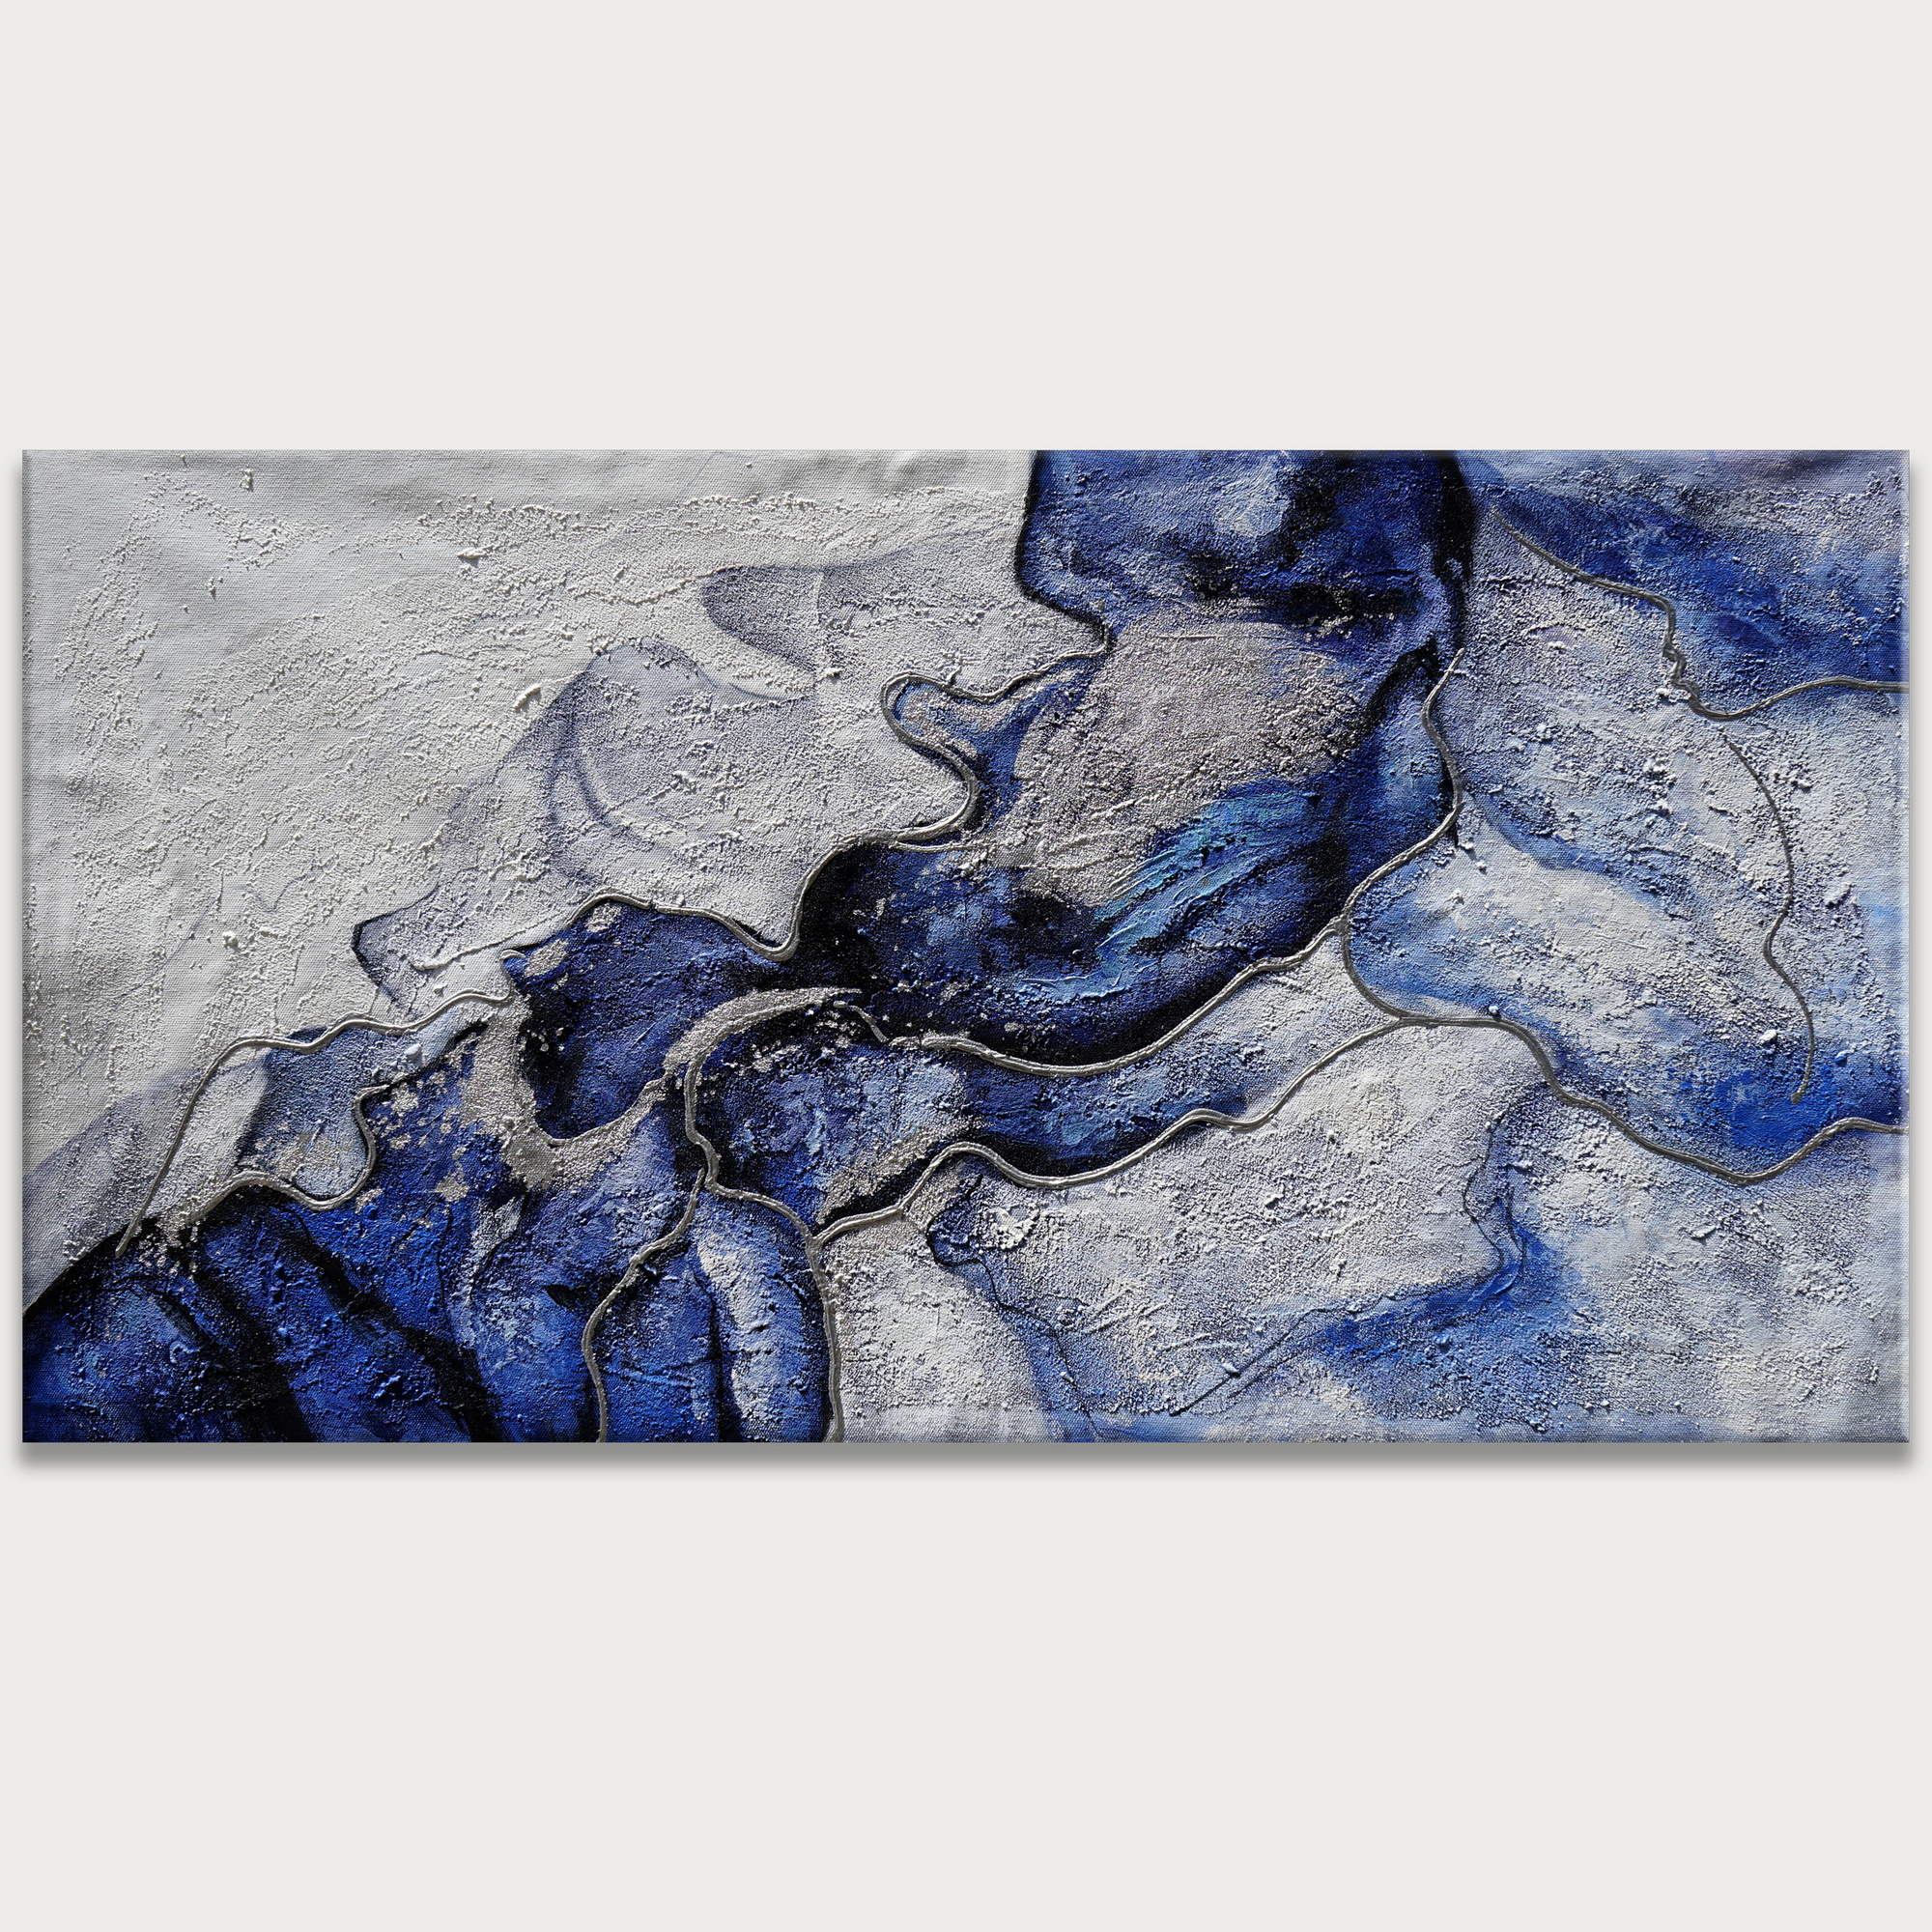 Dipinto a mano Astratto in Blu e Bianco 60x120cm